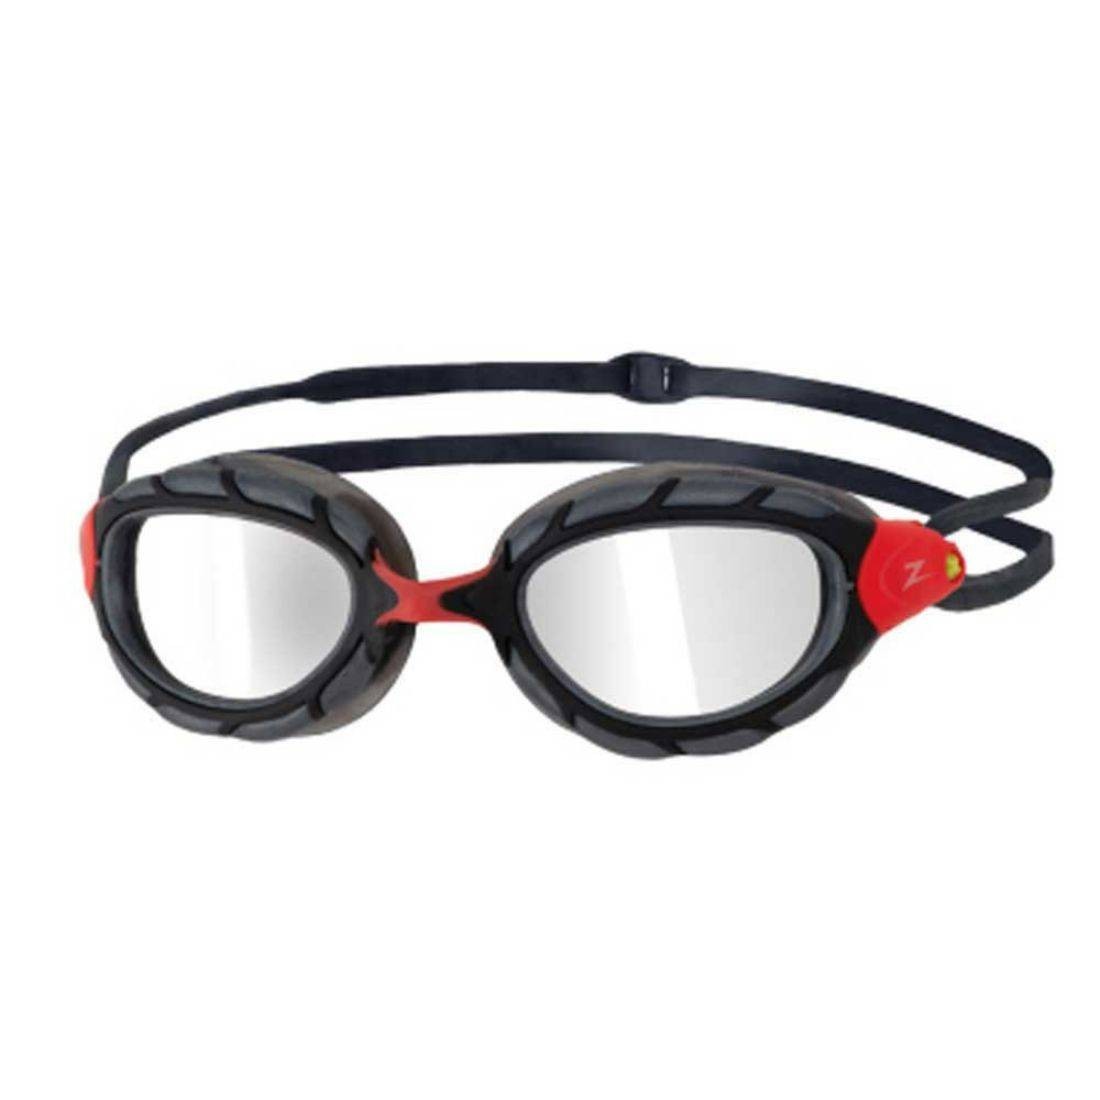 Zoggs Predator Flex Adult Swimming Goggles - Silver / Red 321848